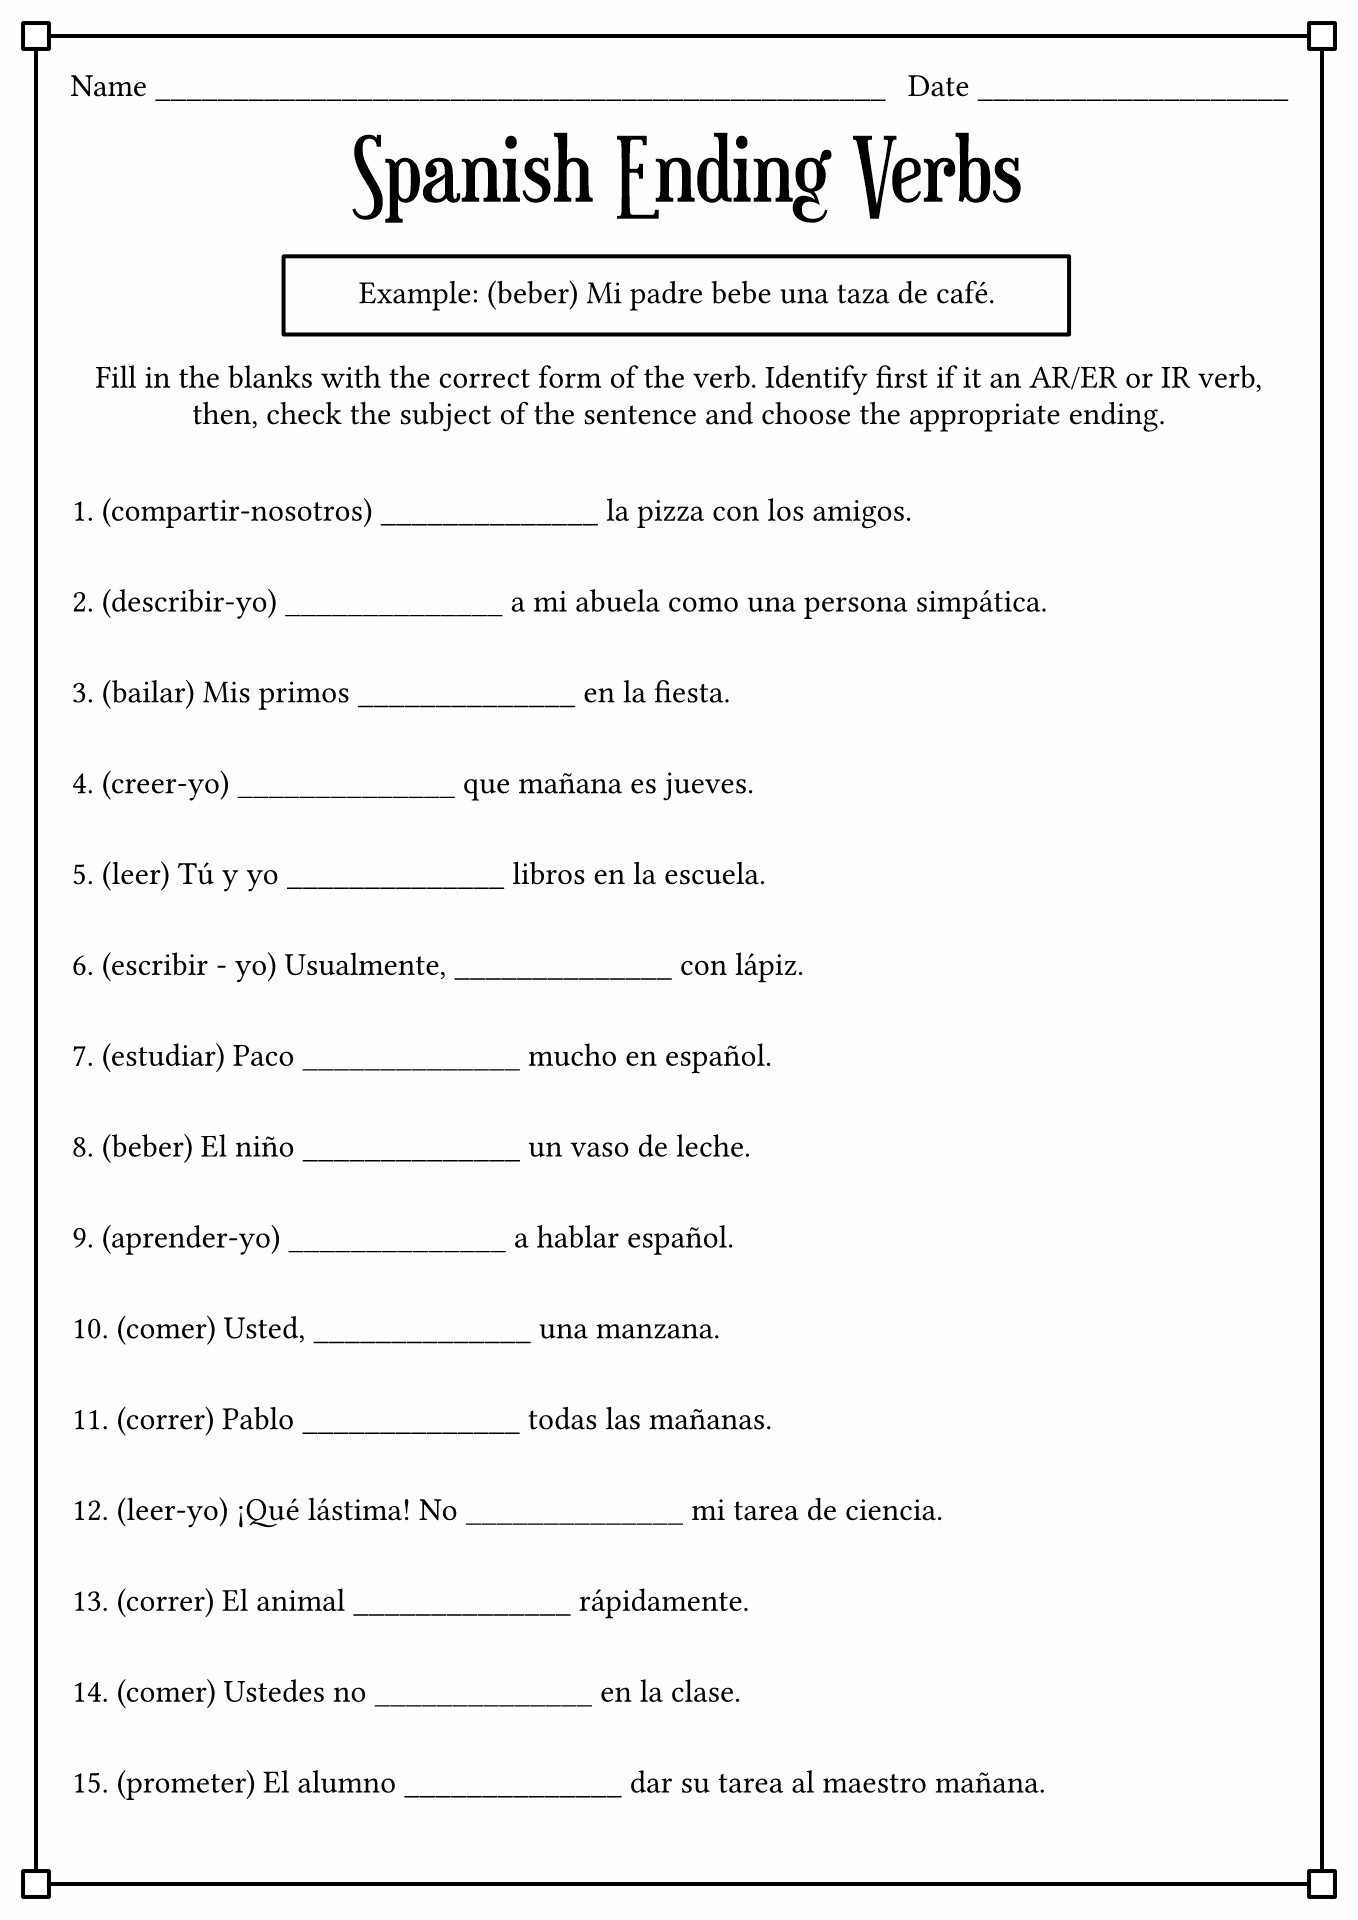 17 Best Images Of Spanish Conjugation Worksheets Printable Spanish Verb Conjugation Worksheets